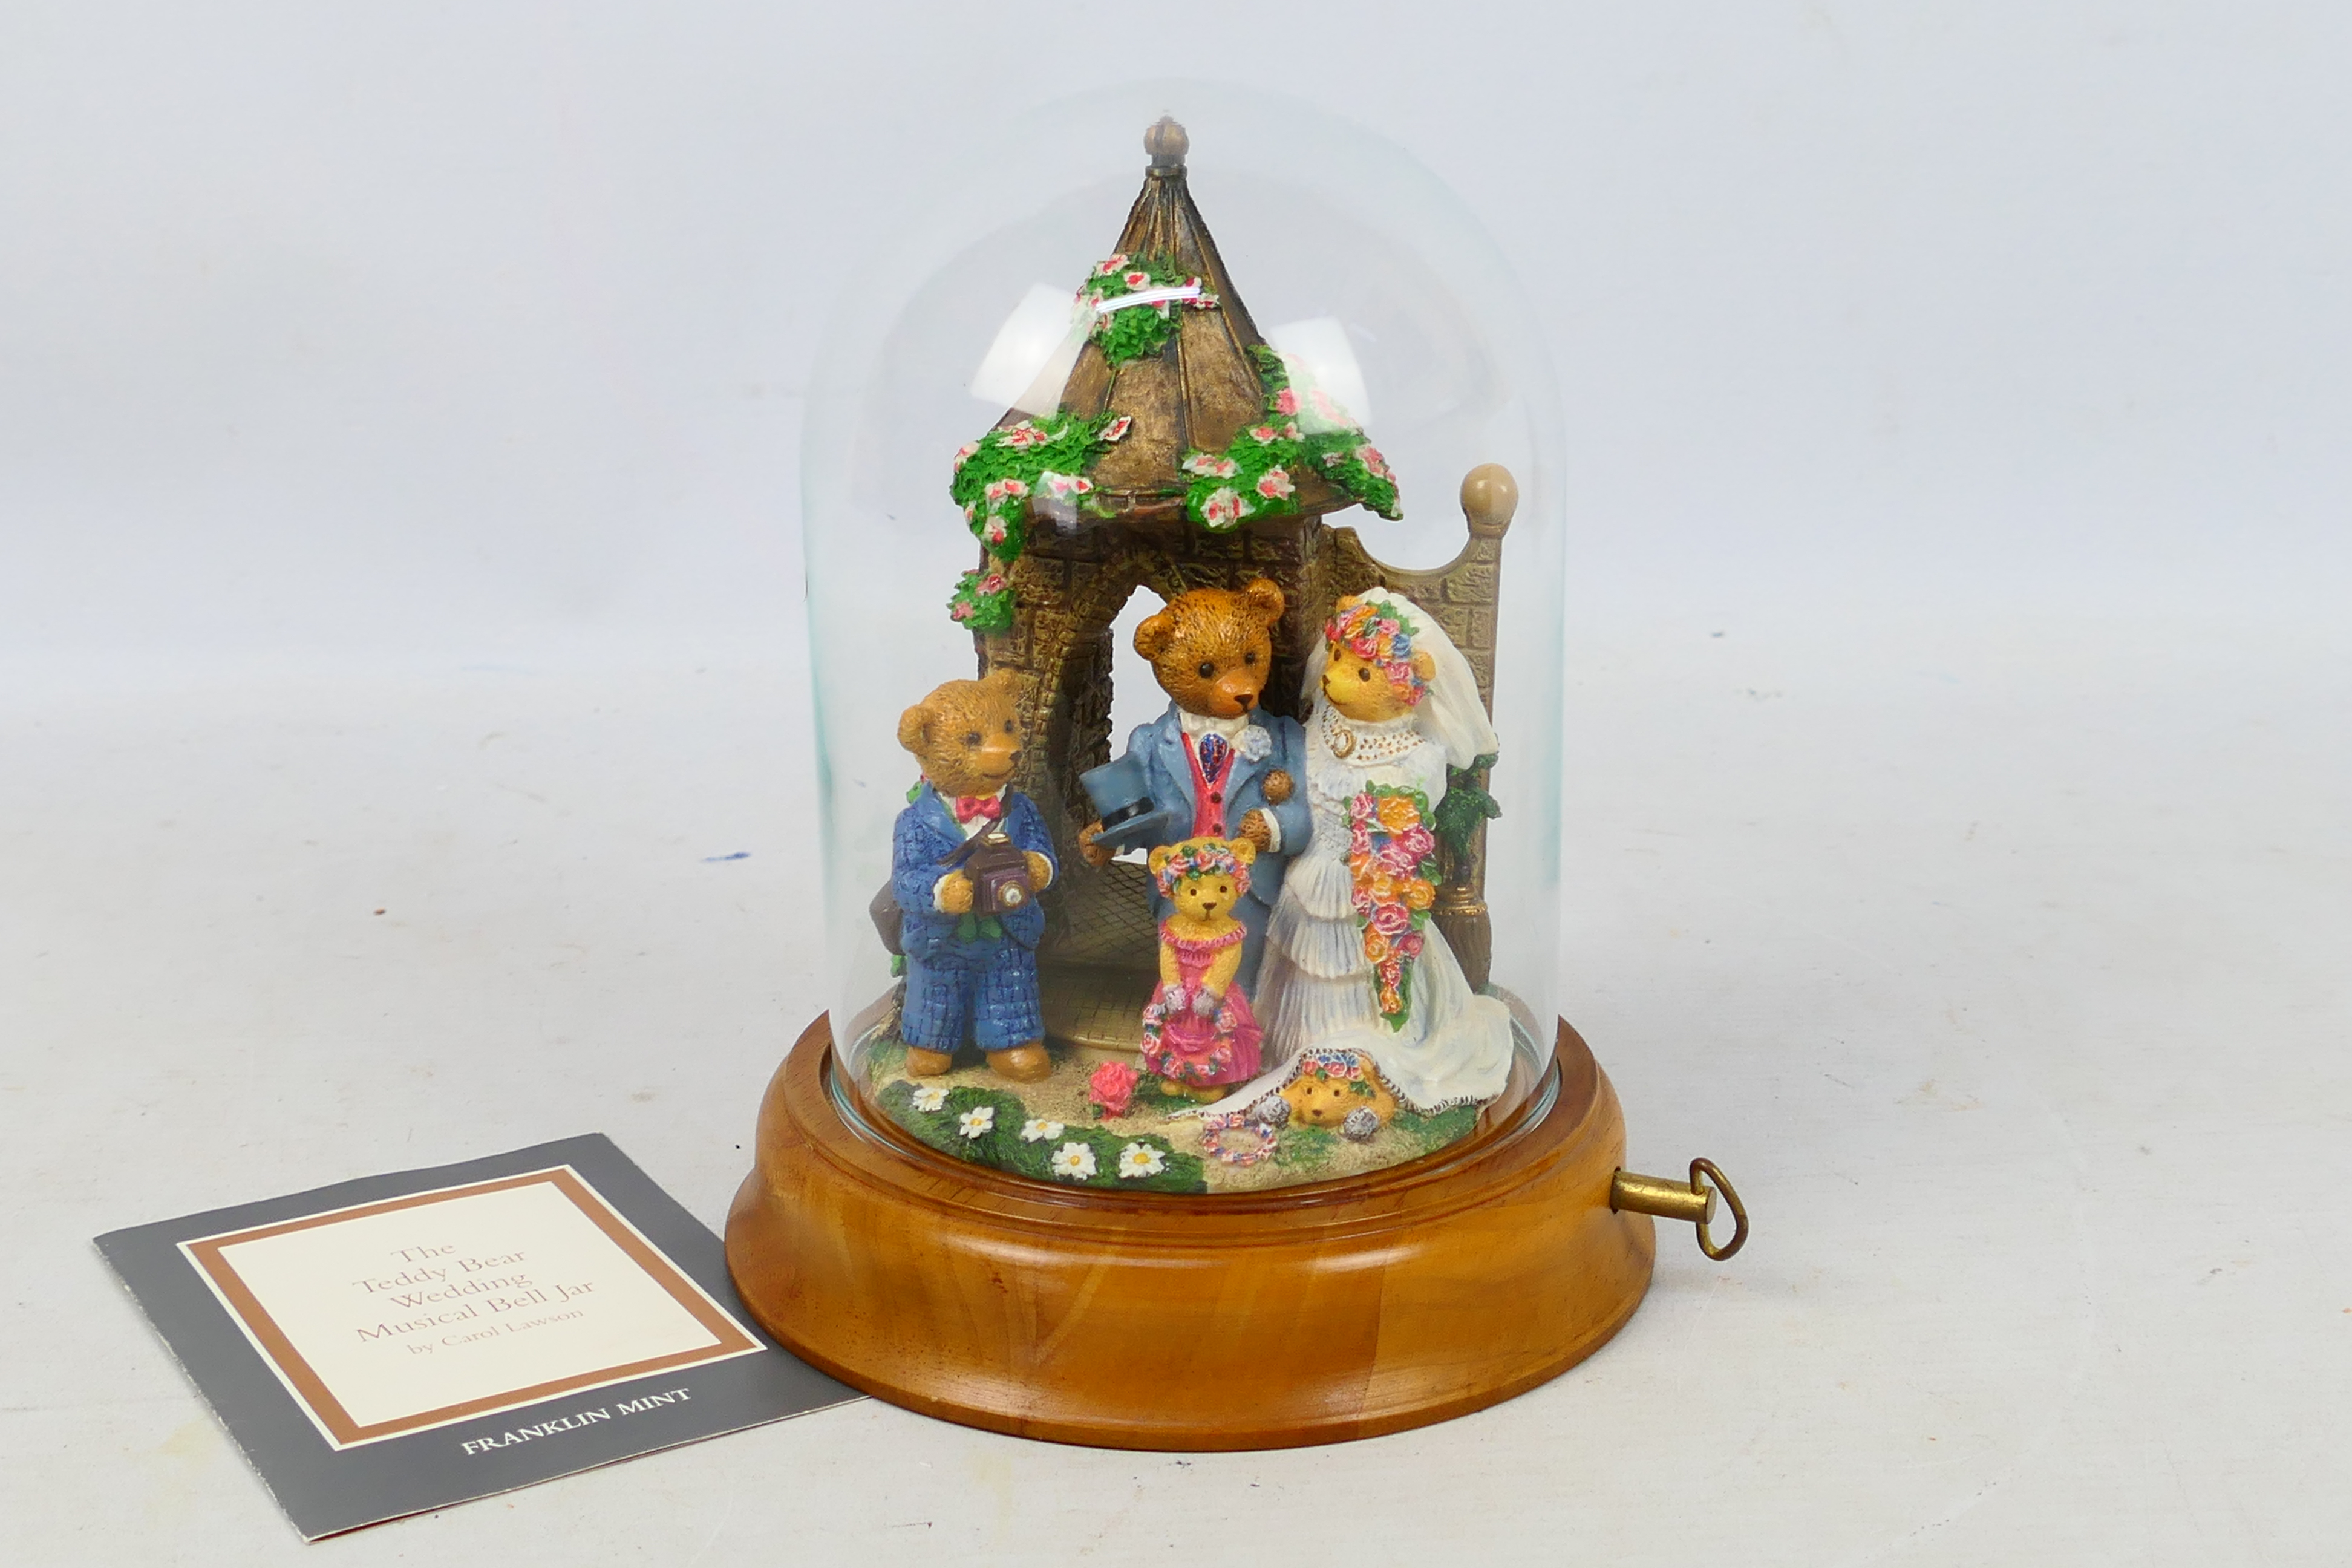 Franklin Mint - A limited edition 'The Teddy Bear Wedding Musical Bell Jar' by Carol Lawson - Jar